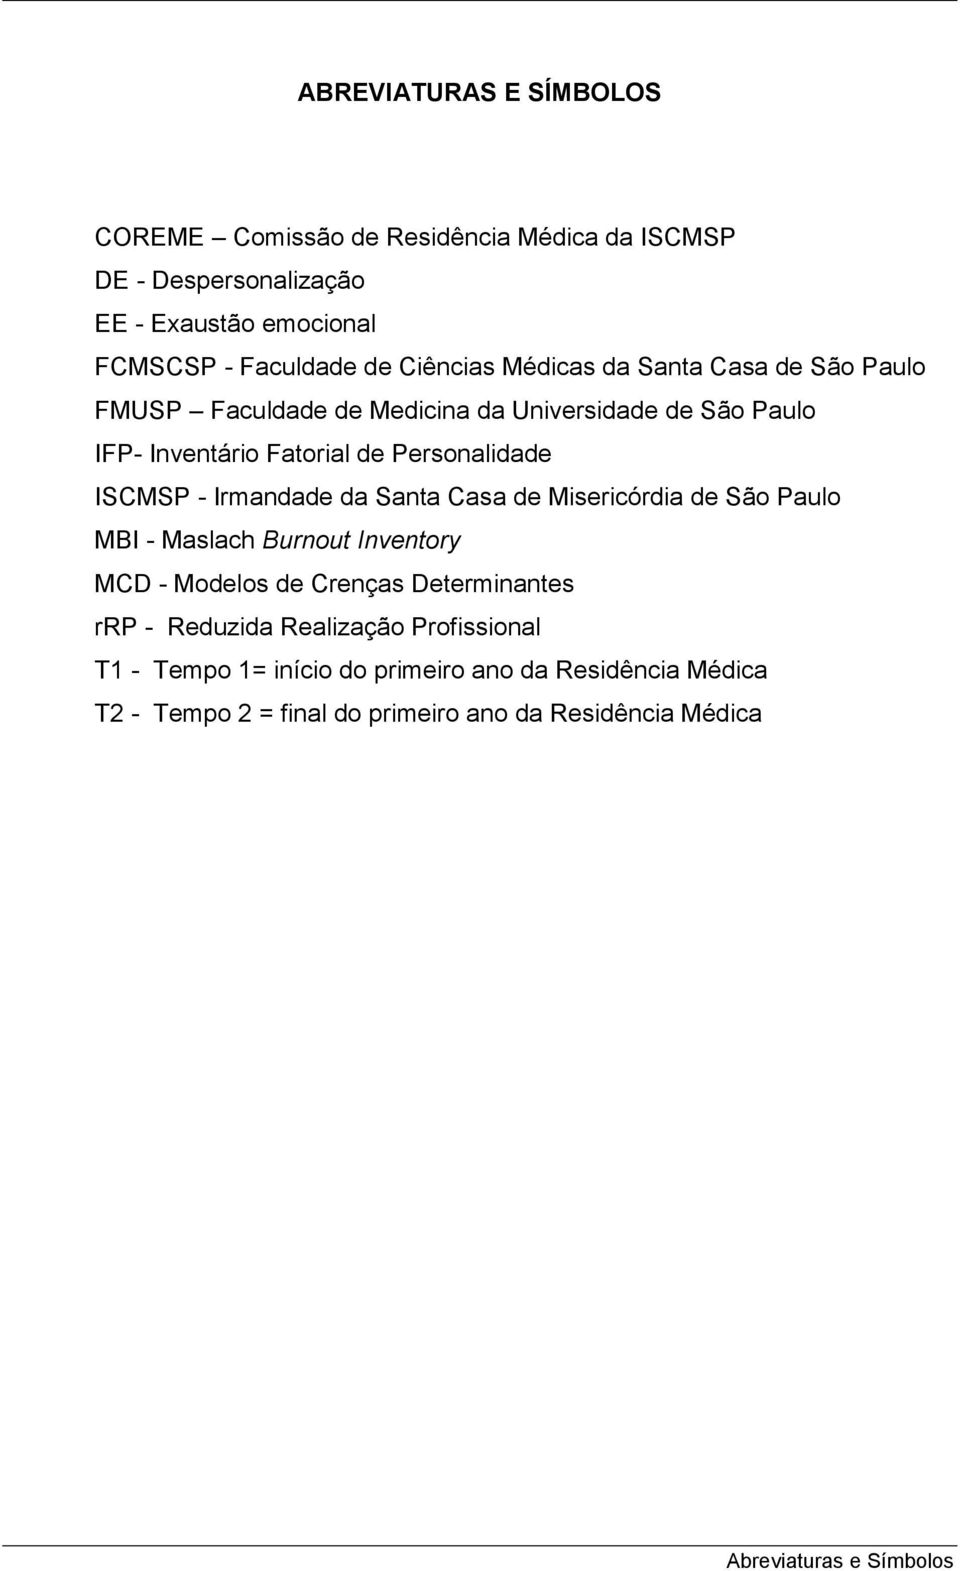 ISCMSP - Irmandade da Santa Casa de Misericórdia de São Paulo MBI - Maslach Burnout Inventory MCD - Modelos de Crenças Determinantes rrp - Reduzida